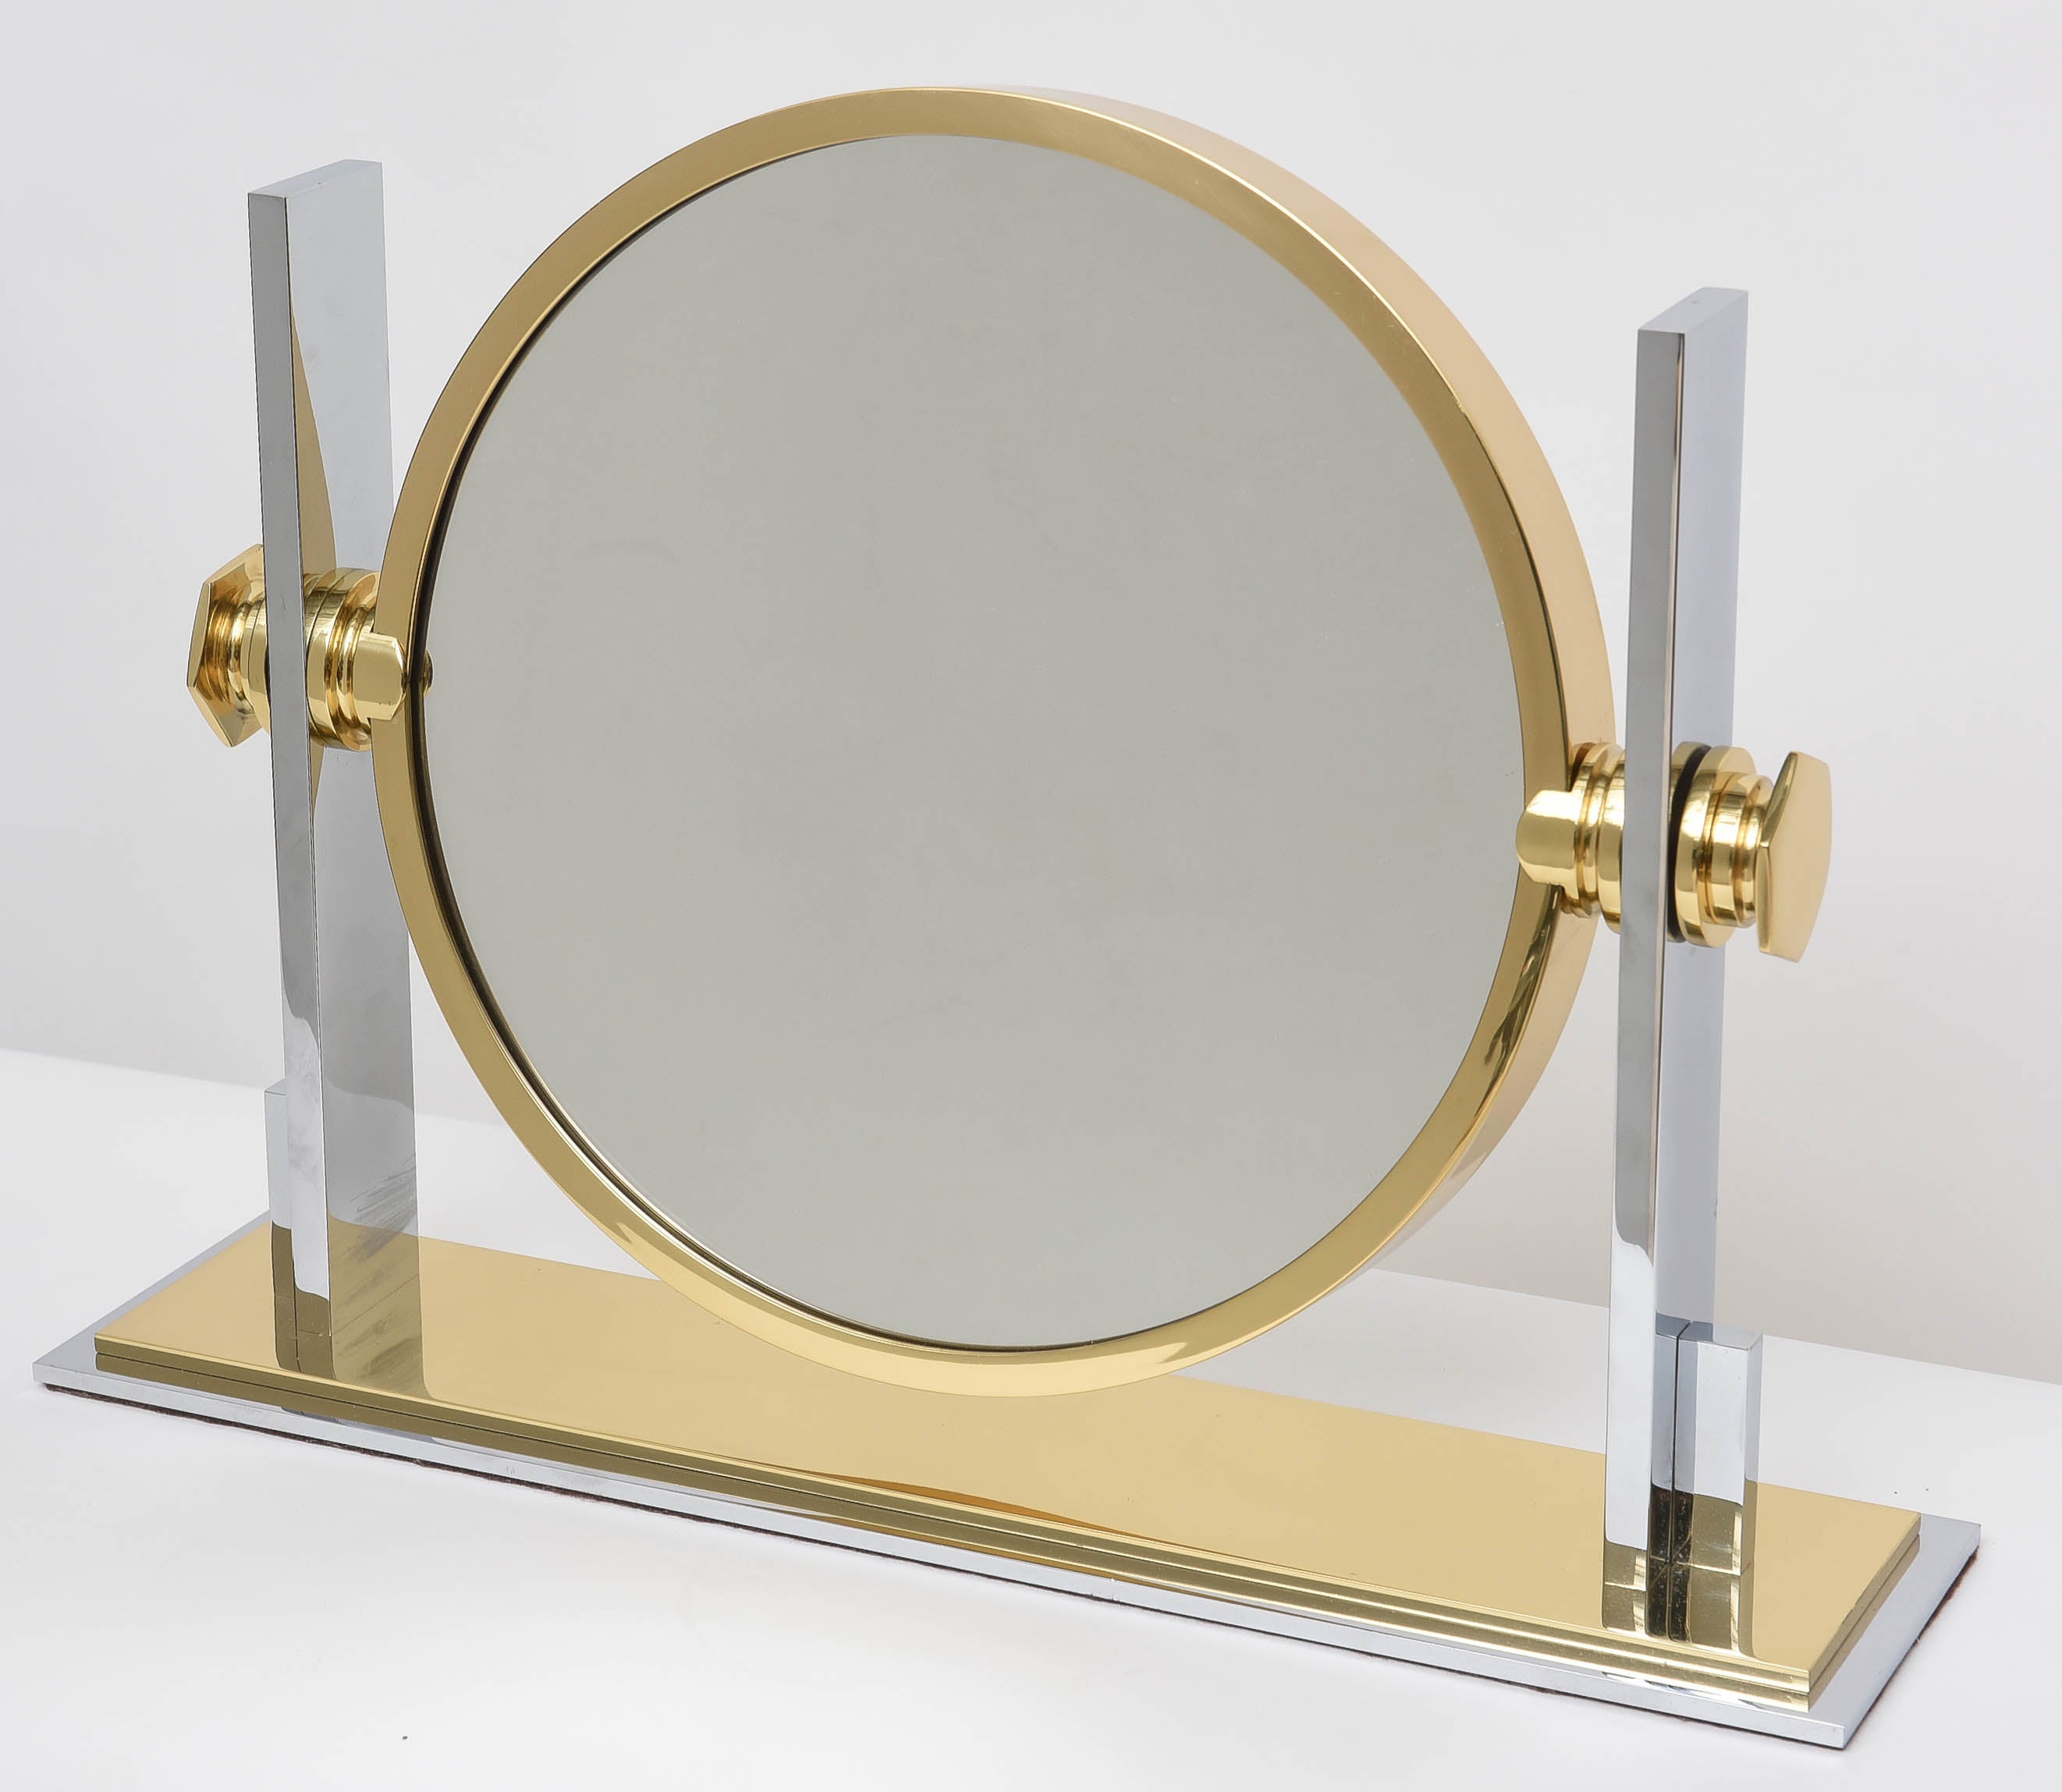 Karl Springer Chrome and Brass Vanity Mirror